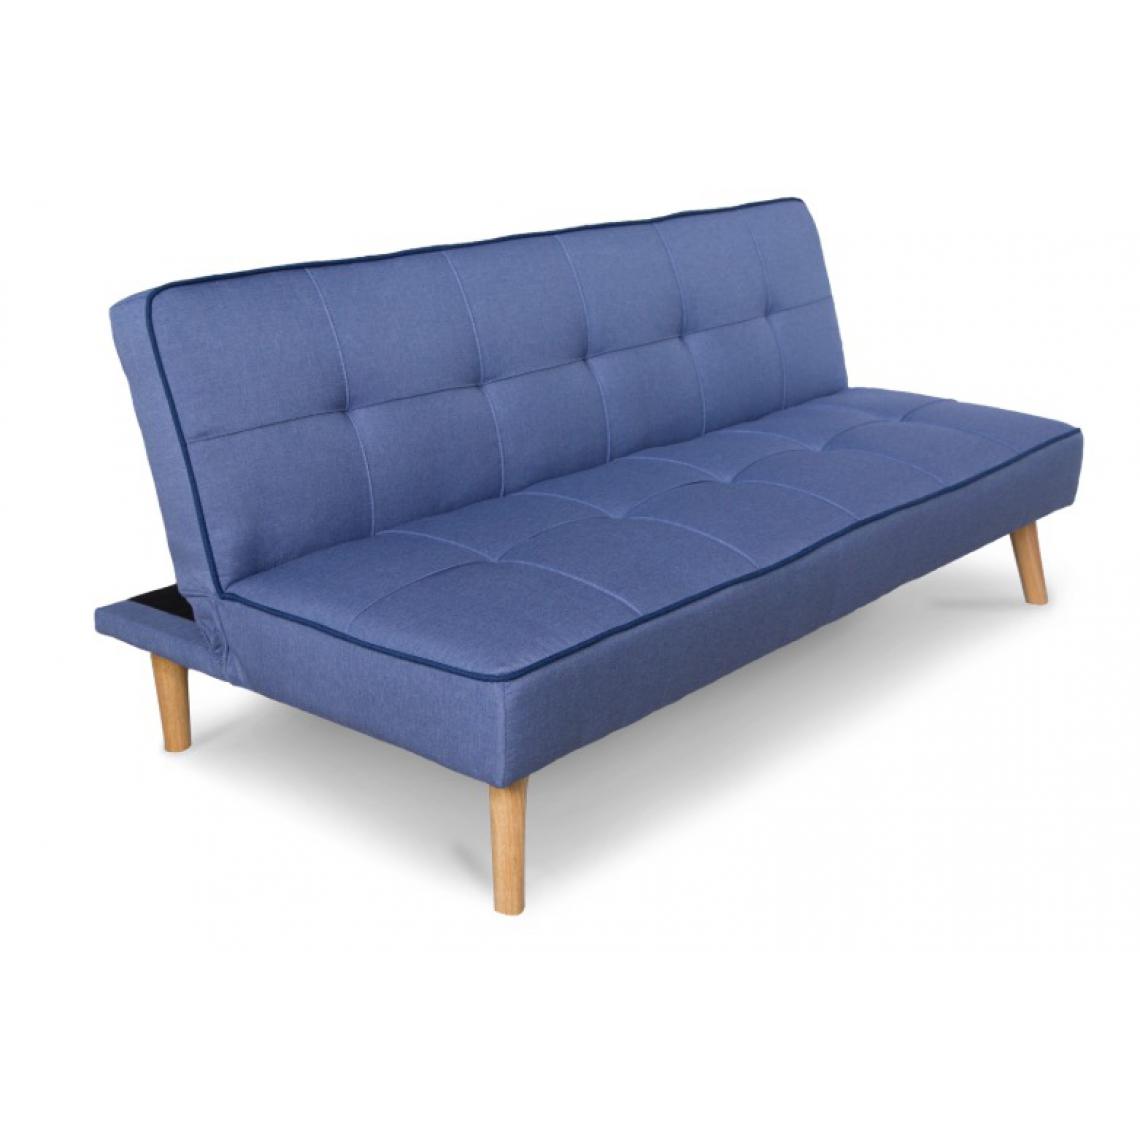 Homestyle4U - Canape lit rabattable bleu - Objets déco